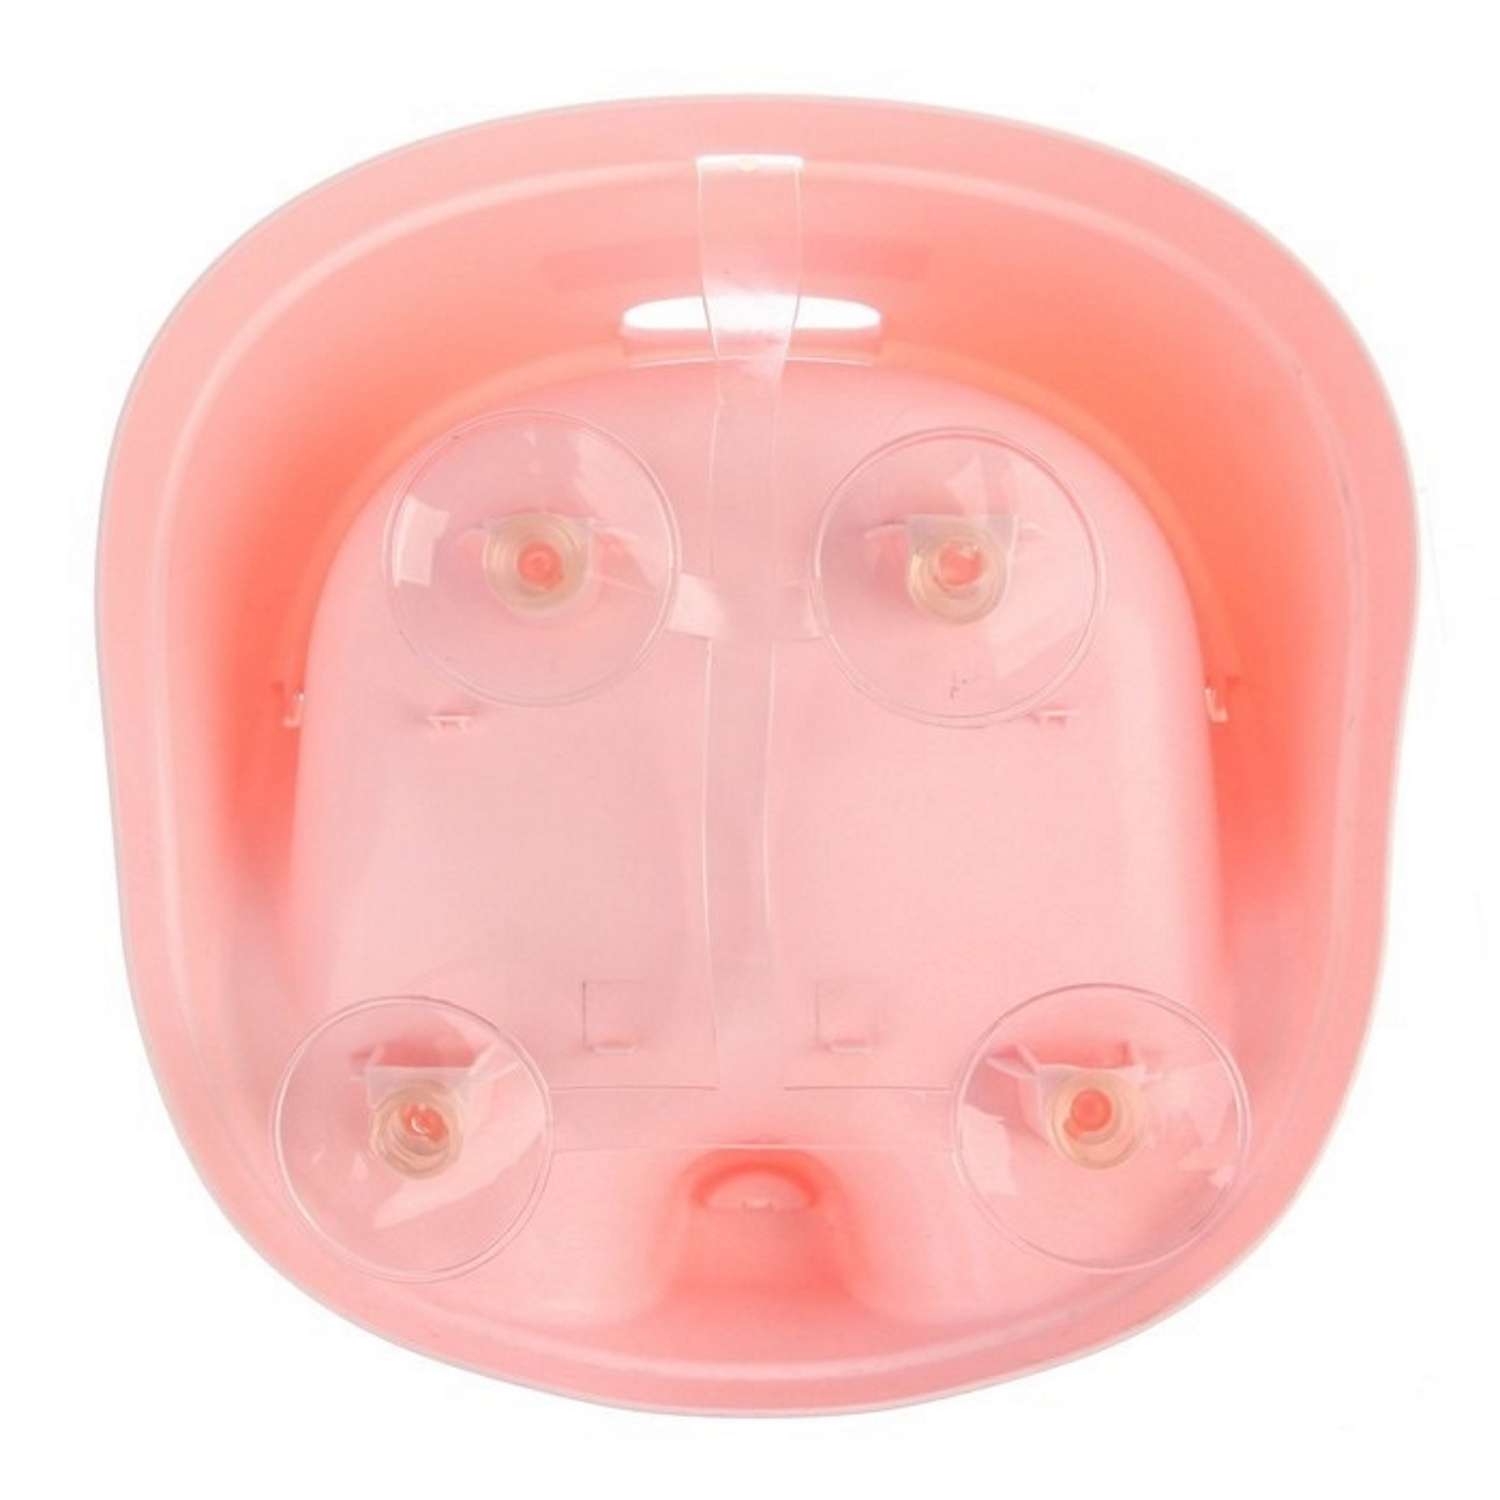 Сидение для купания PLASTIC REPABLIC baby детское на присосках розовое - фото 5